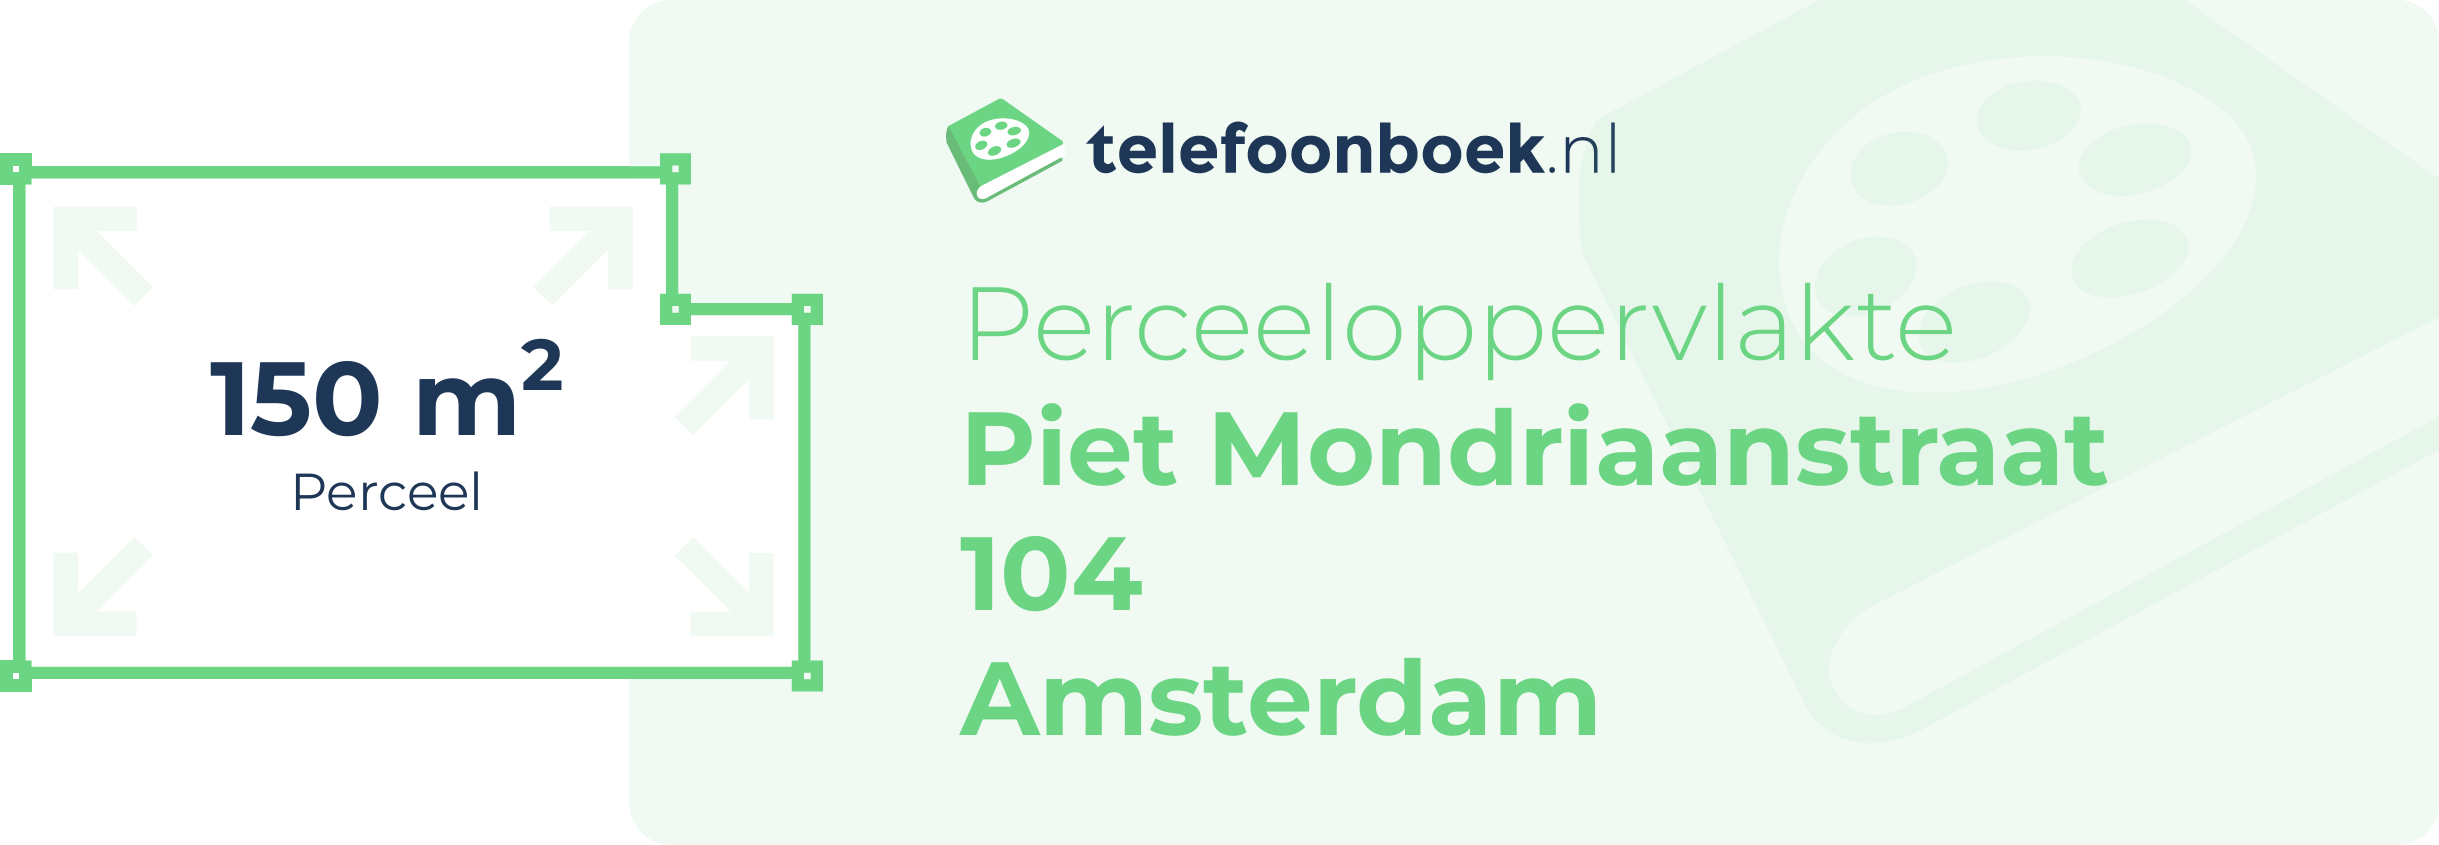 Perceeloppervlakte Piet Mondriaanstraat 104 Amsterdam